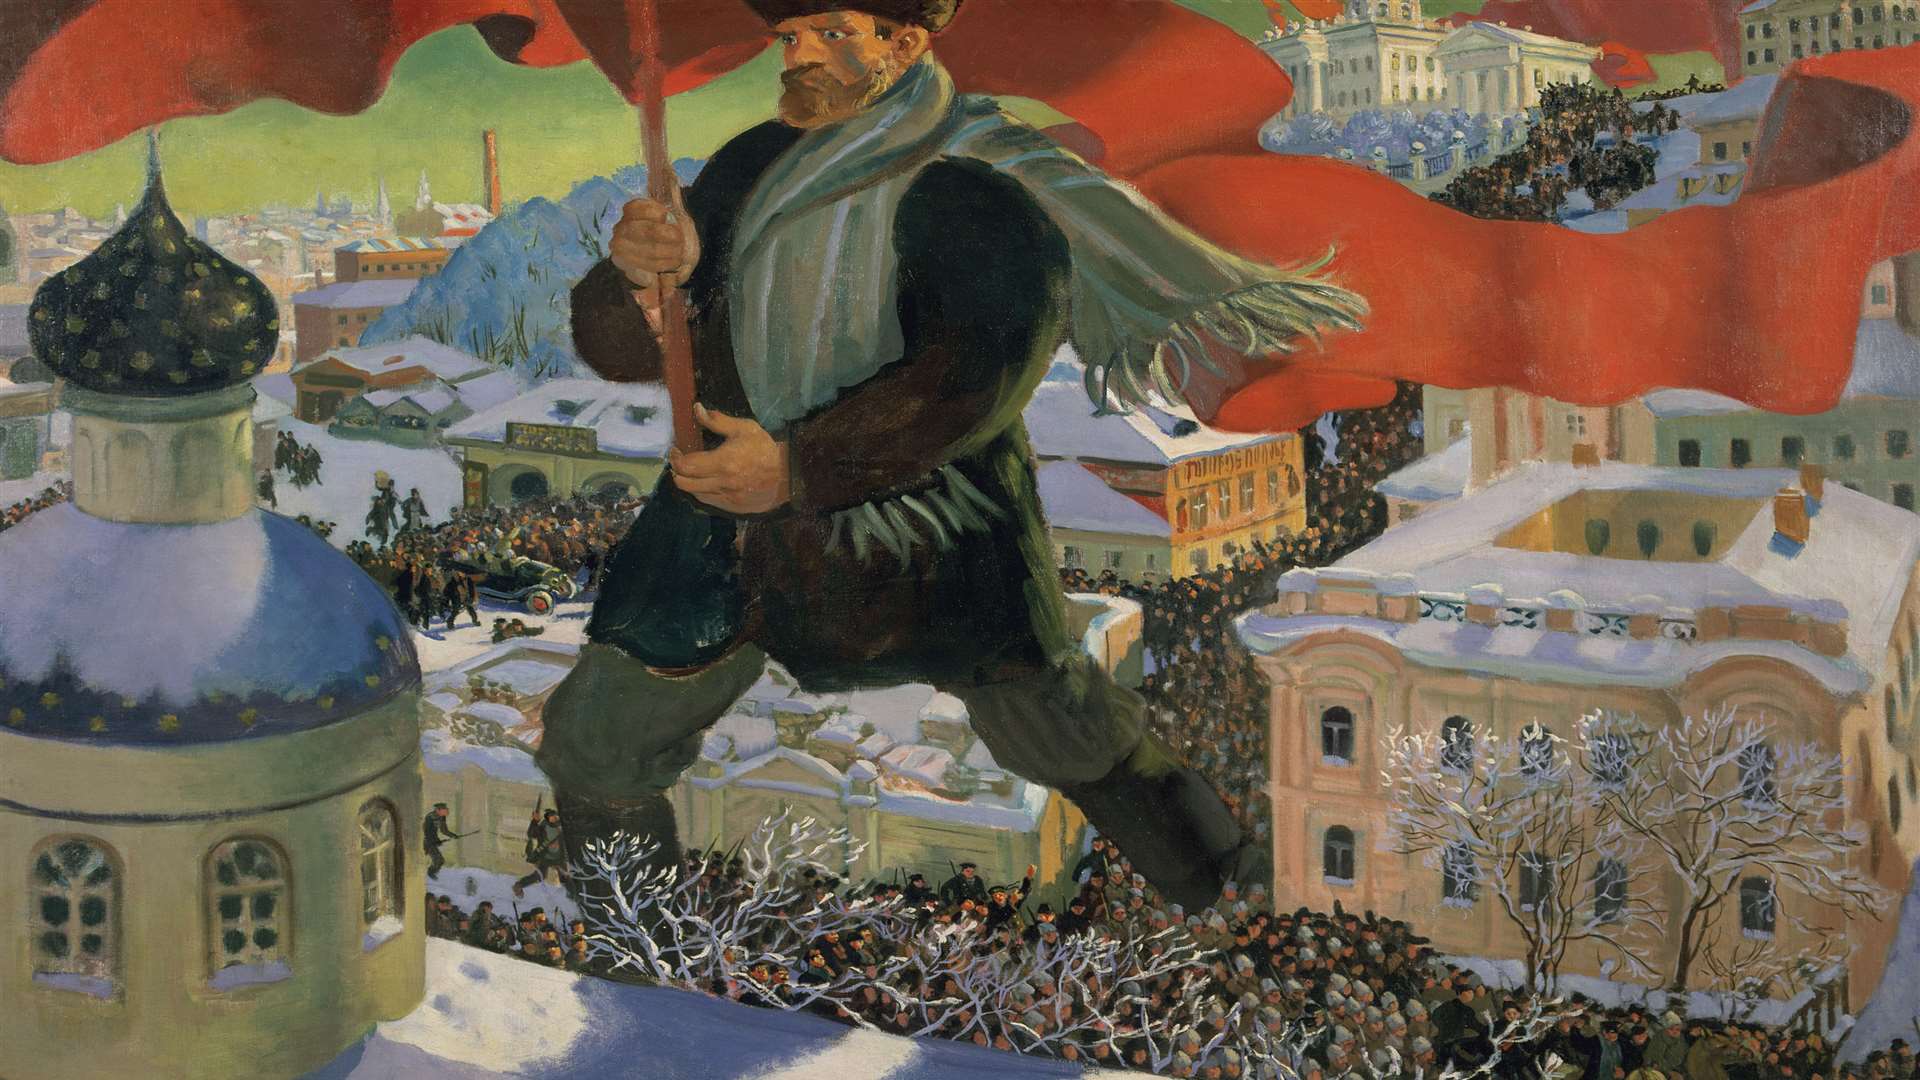 Bolshevik (1920) by Boris Mikailovich Kustodiev. Supplied by State Tretyakov Gallery